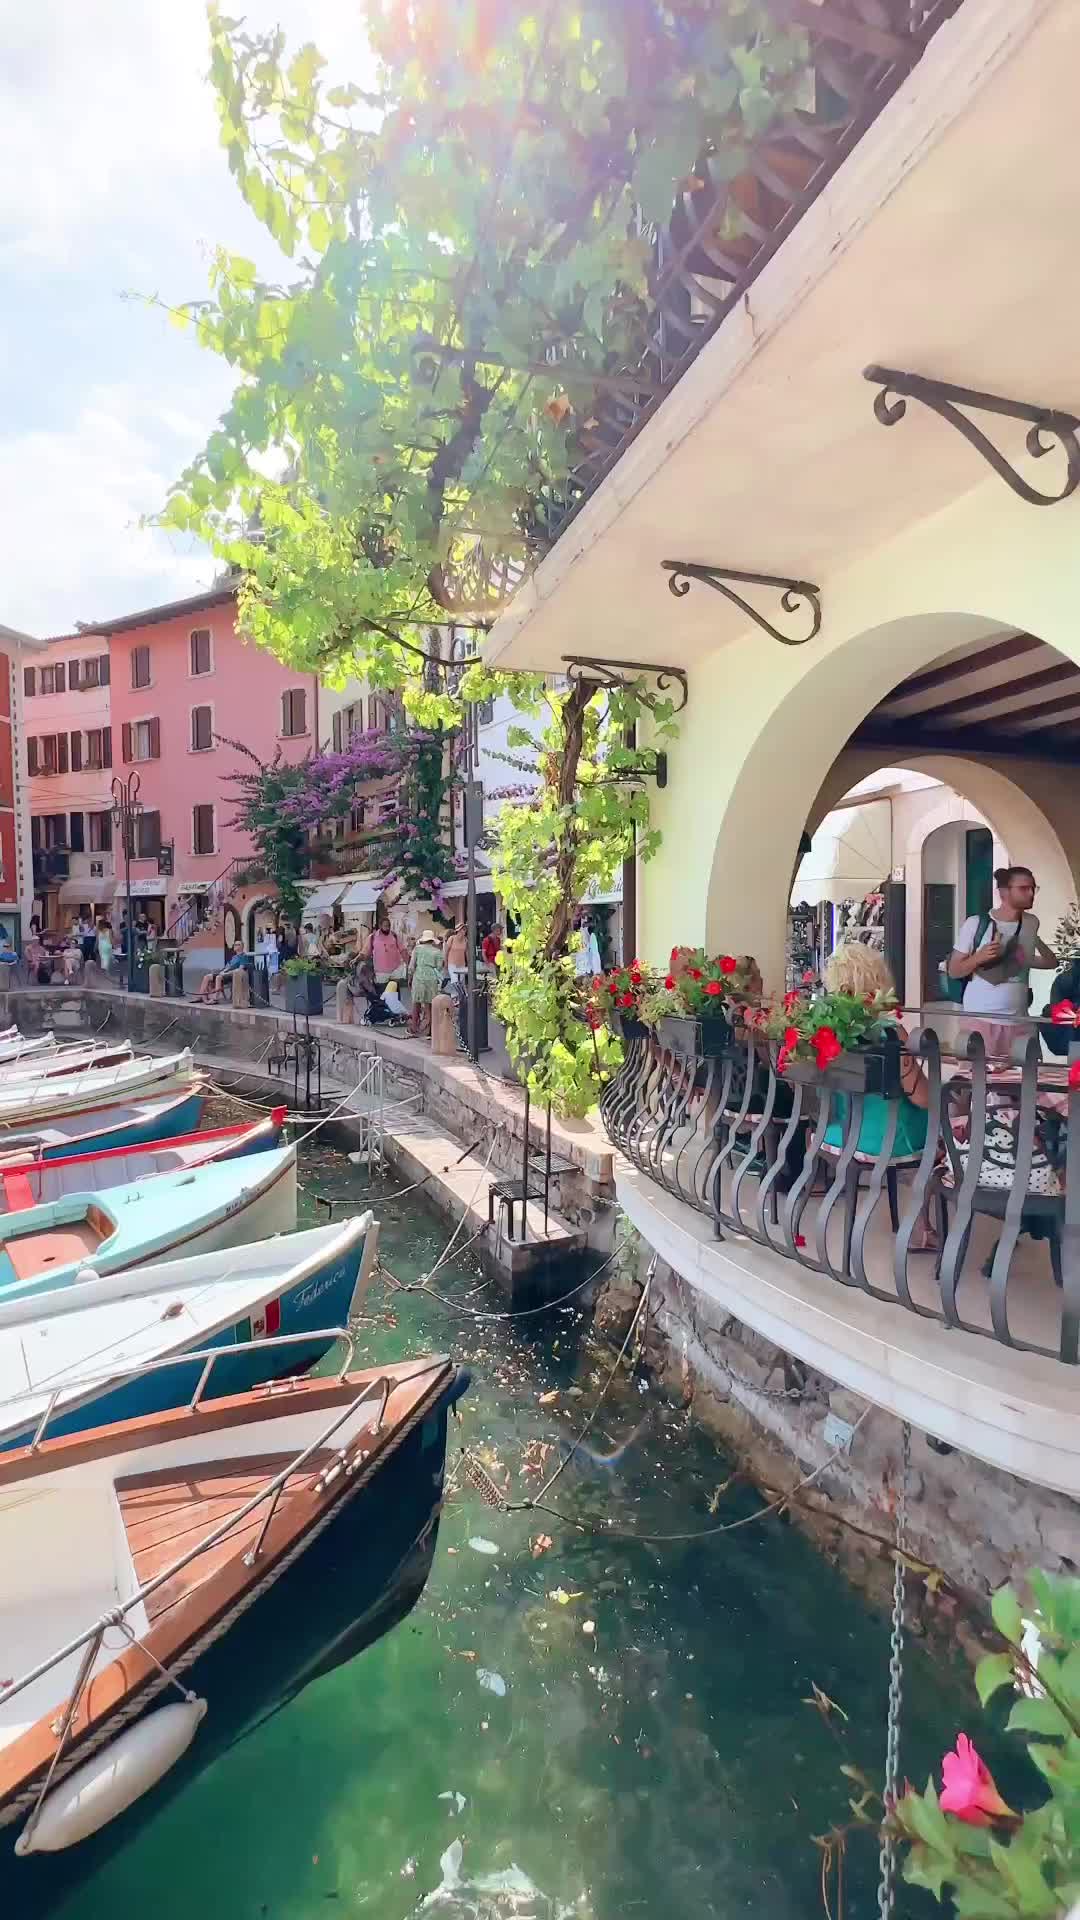 Admiring Lake Garda: Italy's Scenic Gem